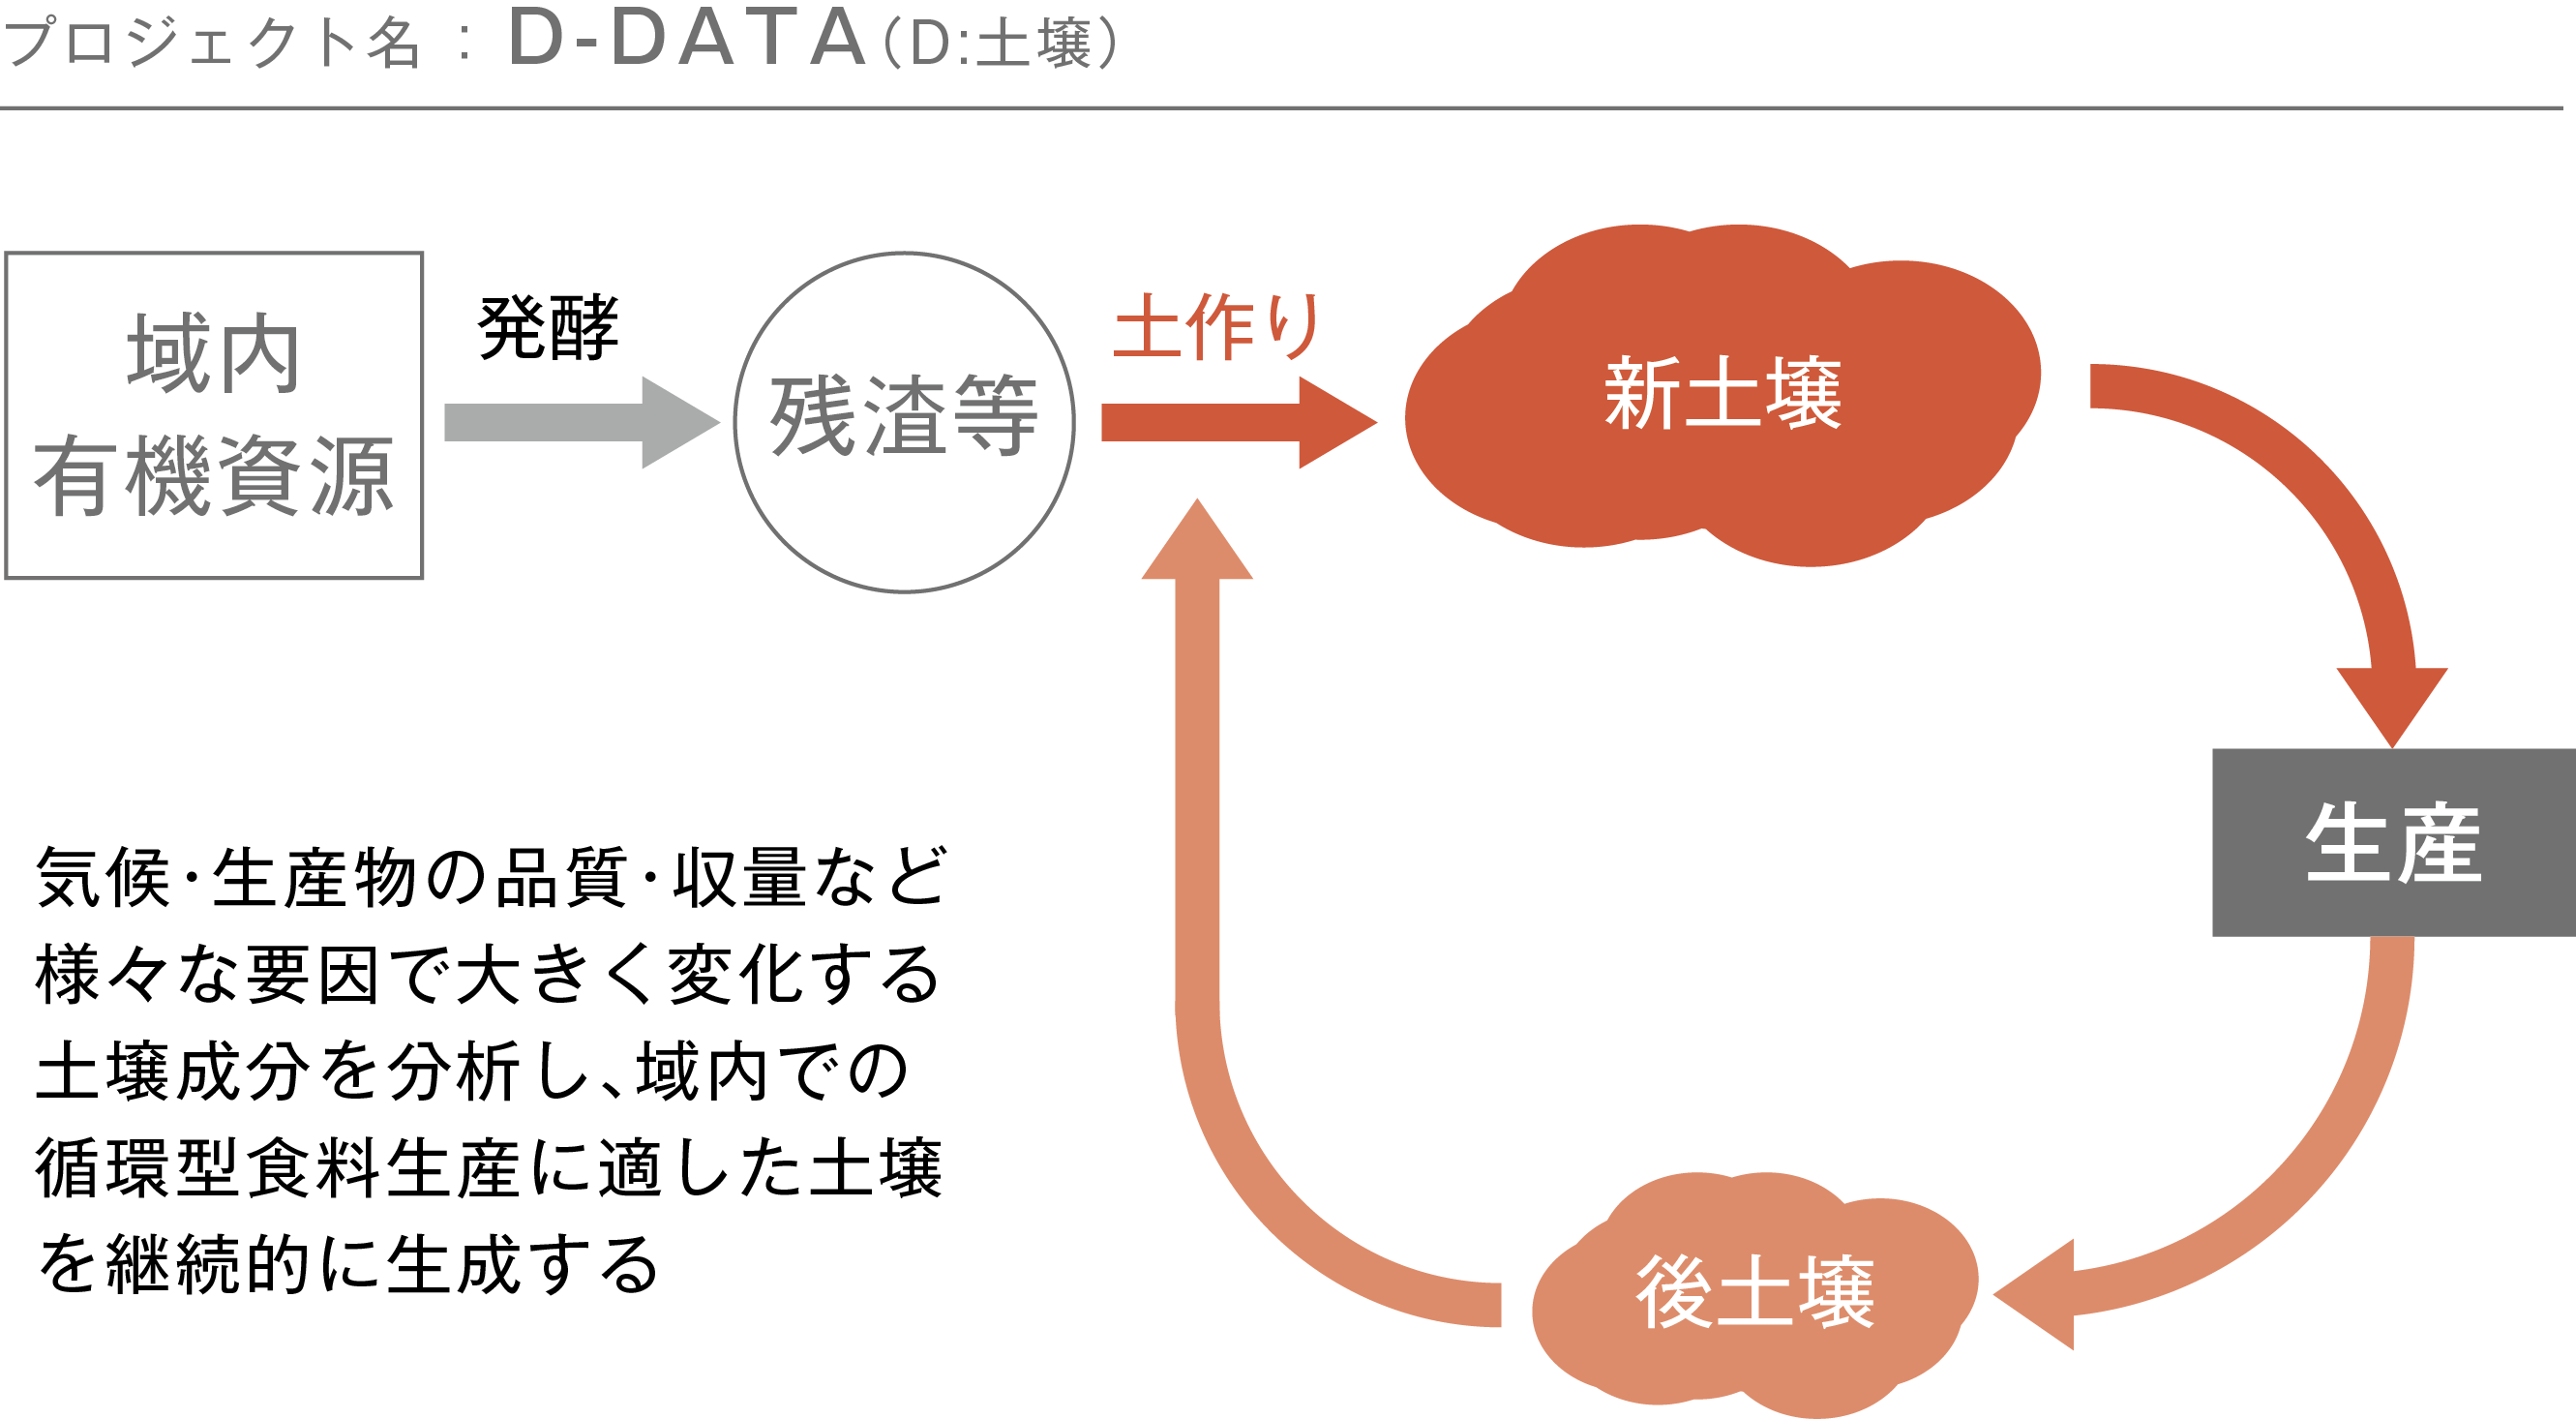 D-DATA仕組図